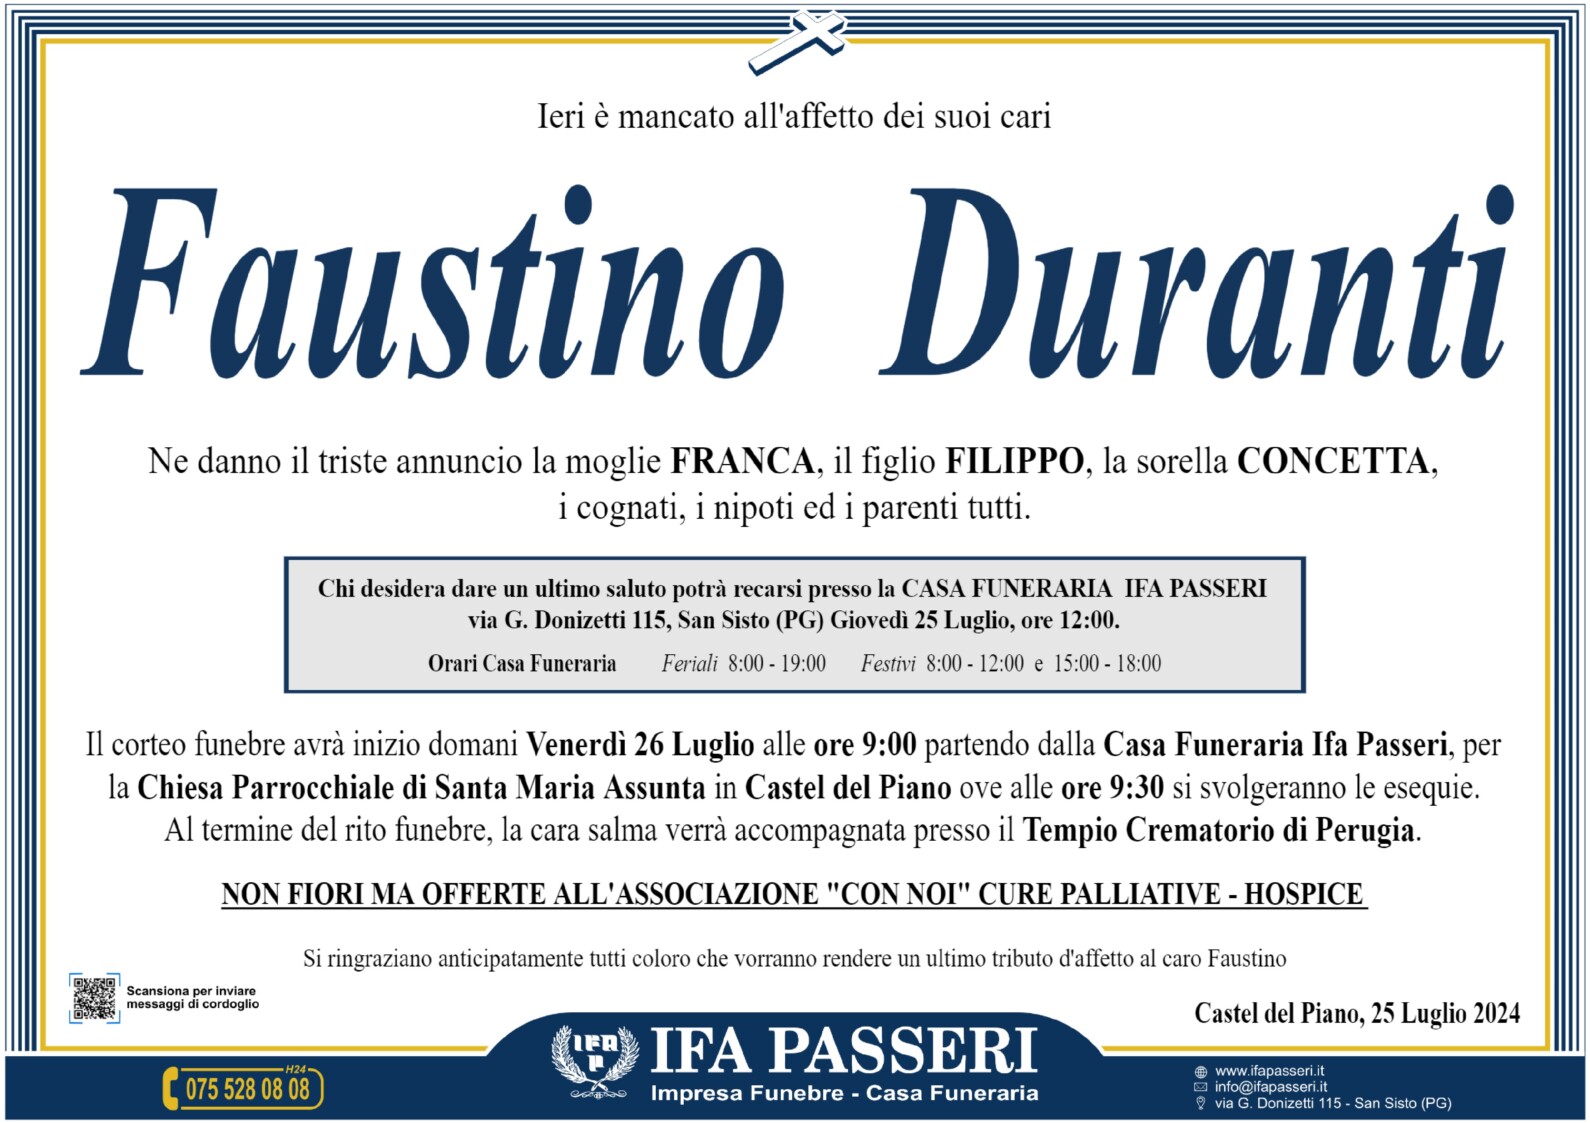 Faustino Duranti